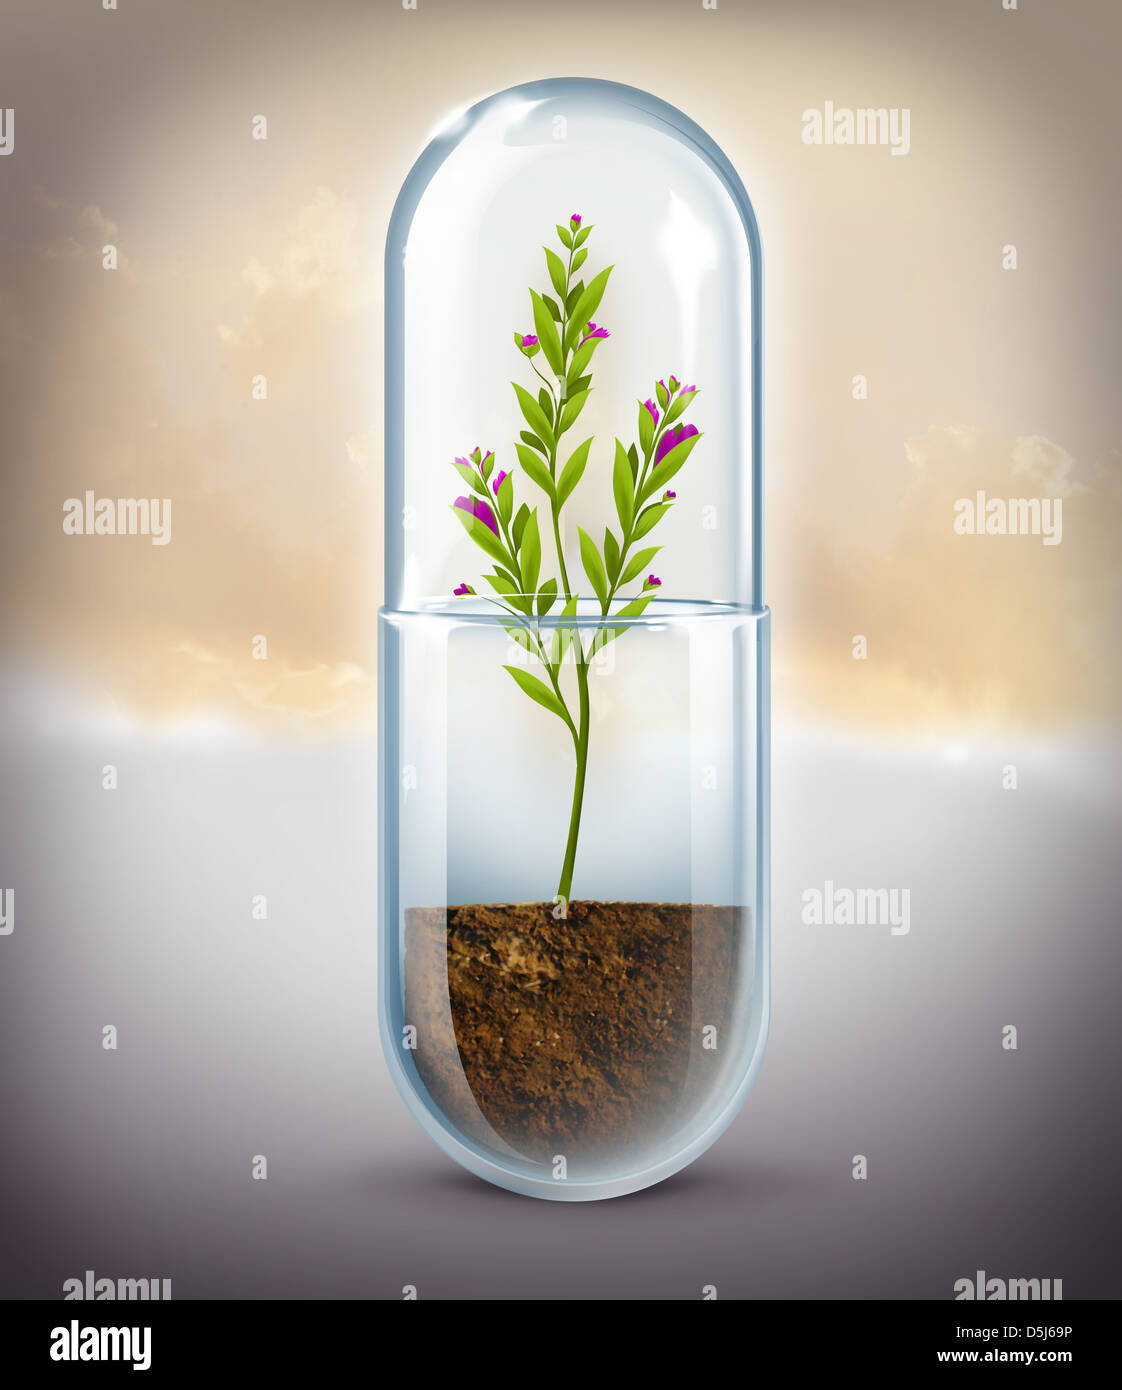 Imagen ilustrativa de plantas creciendo en la cápsula que representa la medicina natural Foto de stock